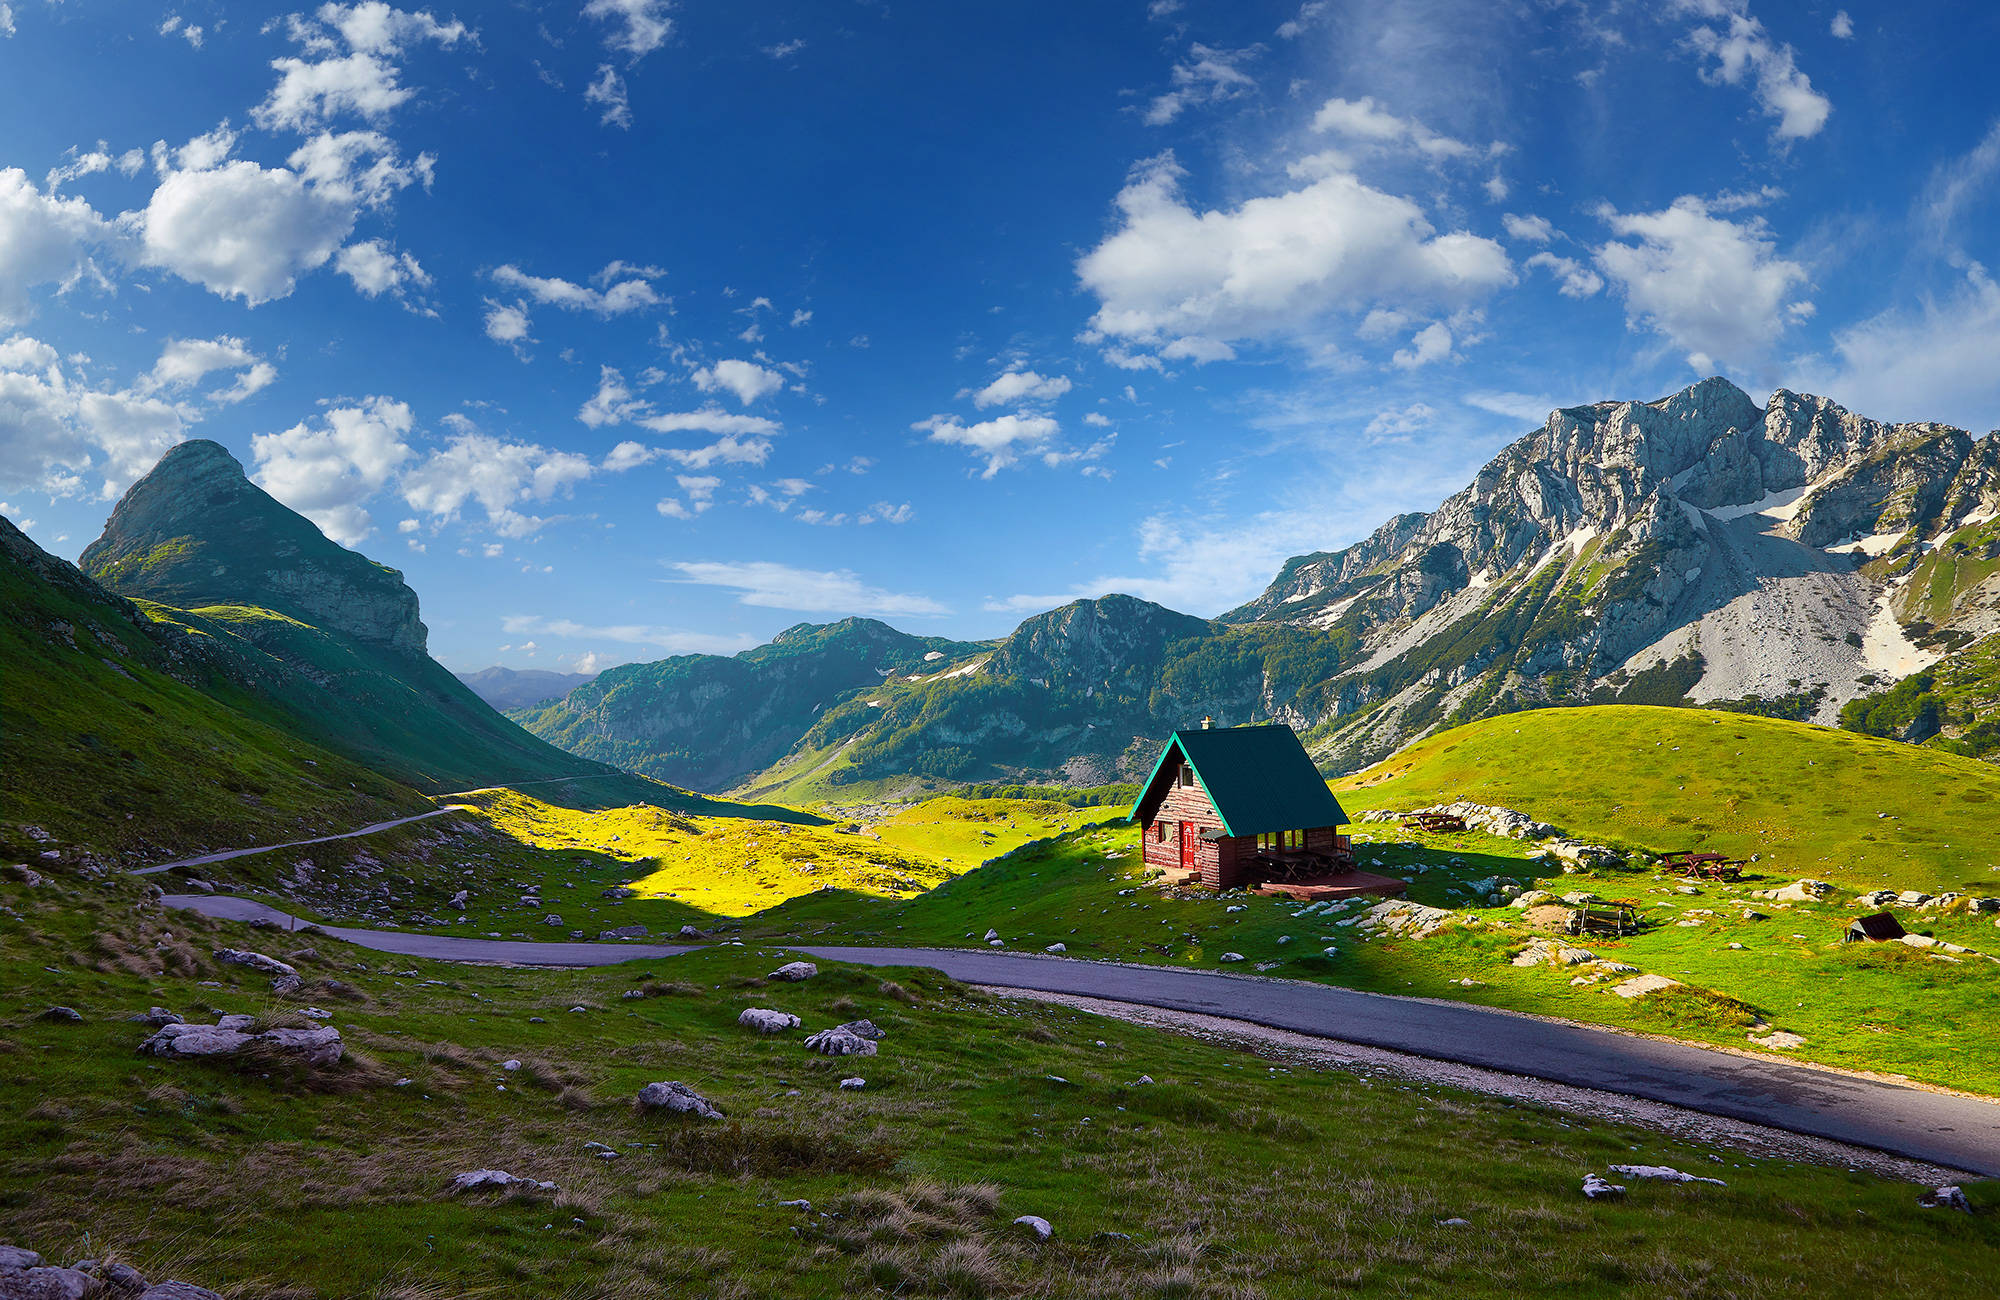 Durmitor Mountains National Park i Montenegro består af helt spektakulær natur